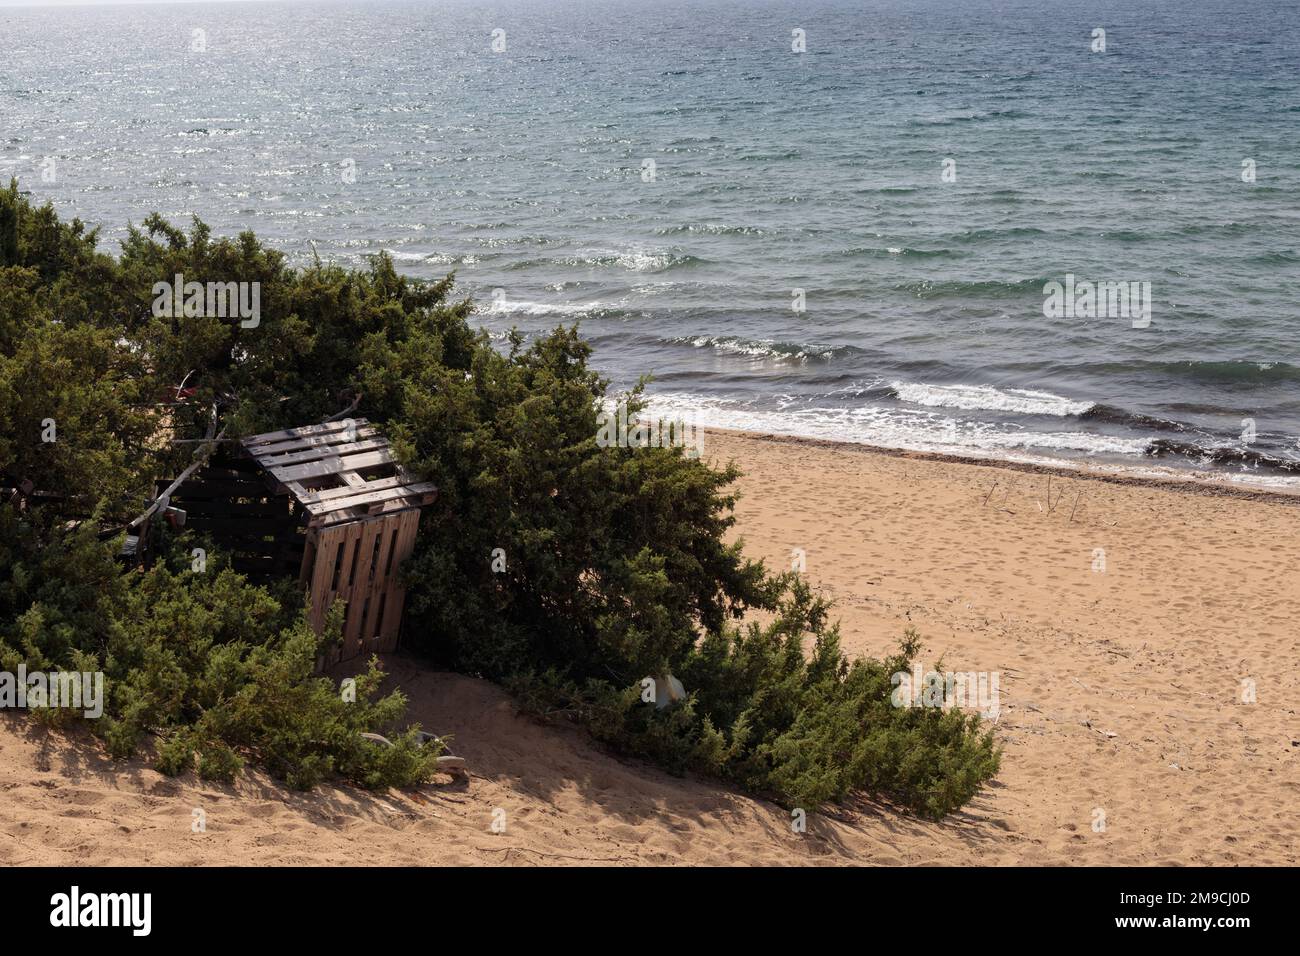 Una casa fatta di pallet di legno sulla spiaggia, castane su un'isola solitaria. Foto Stock